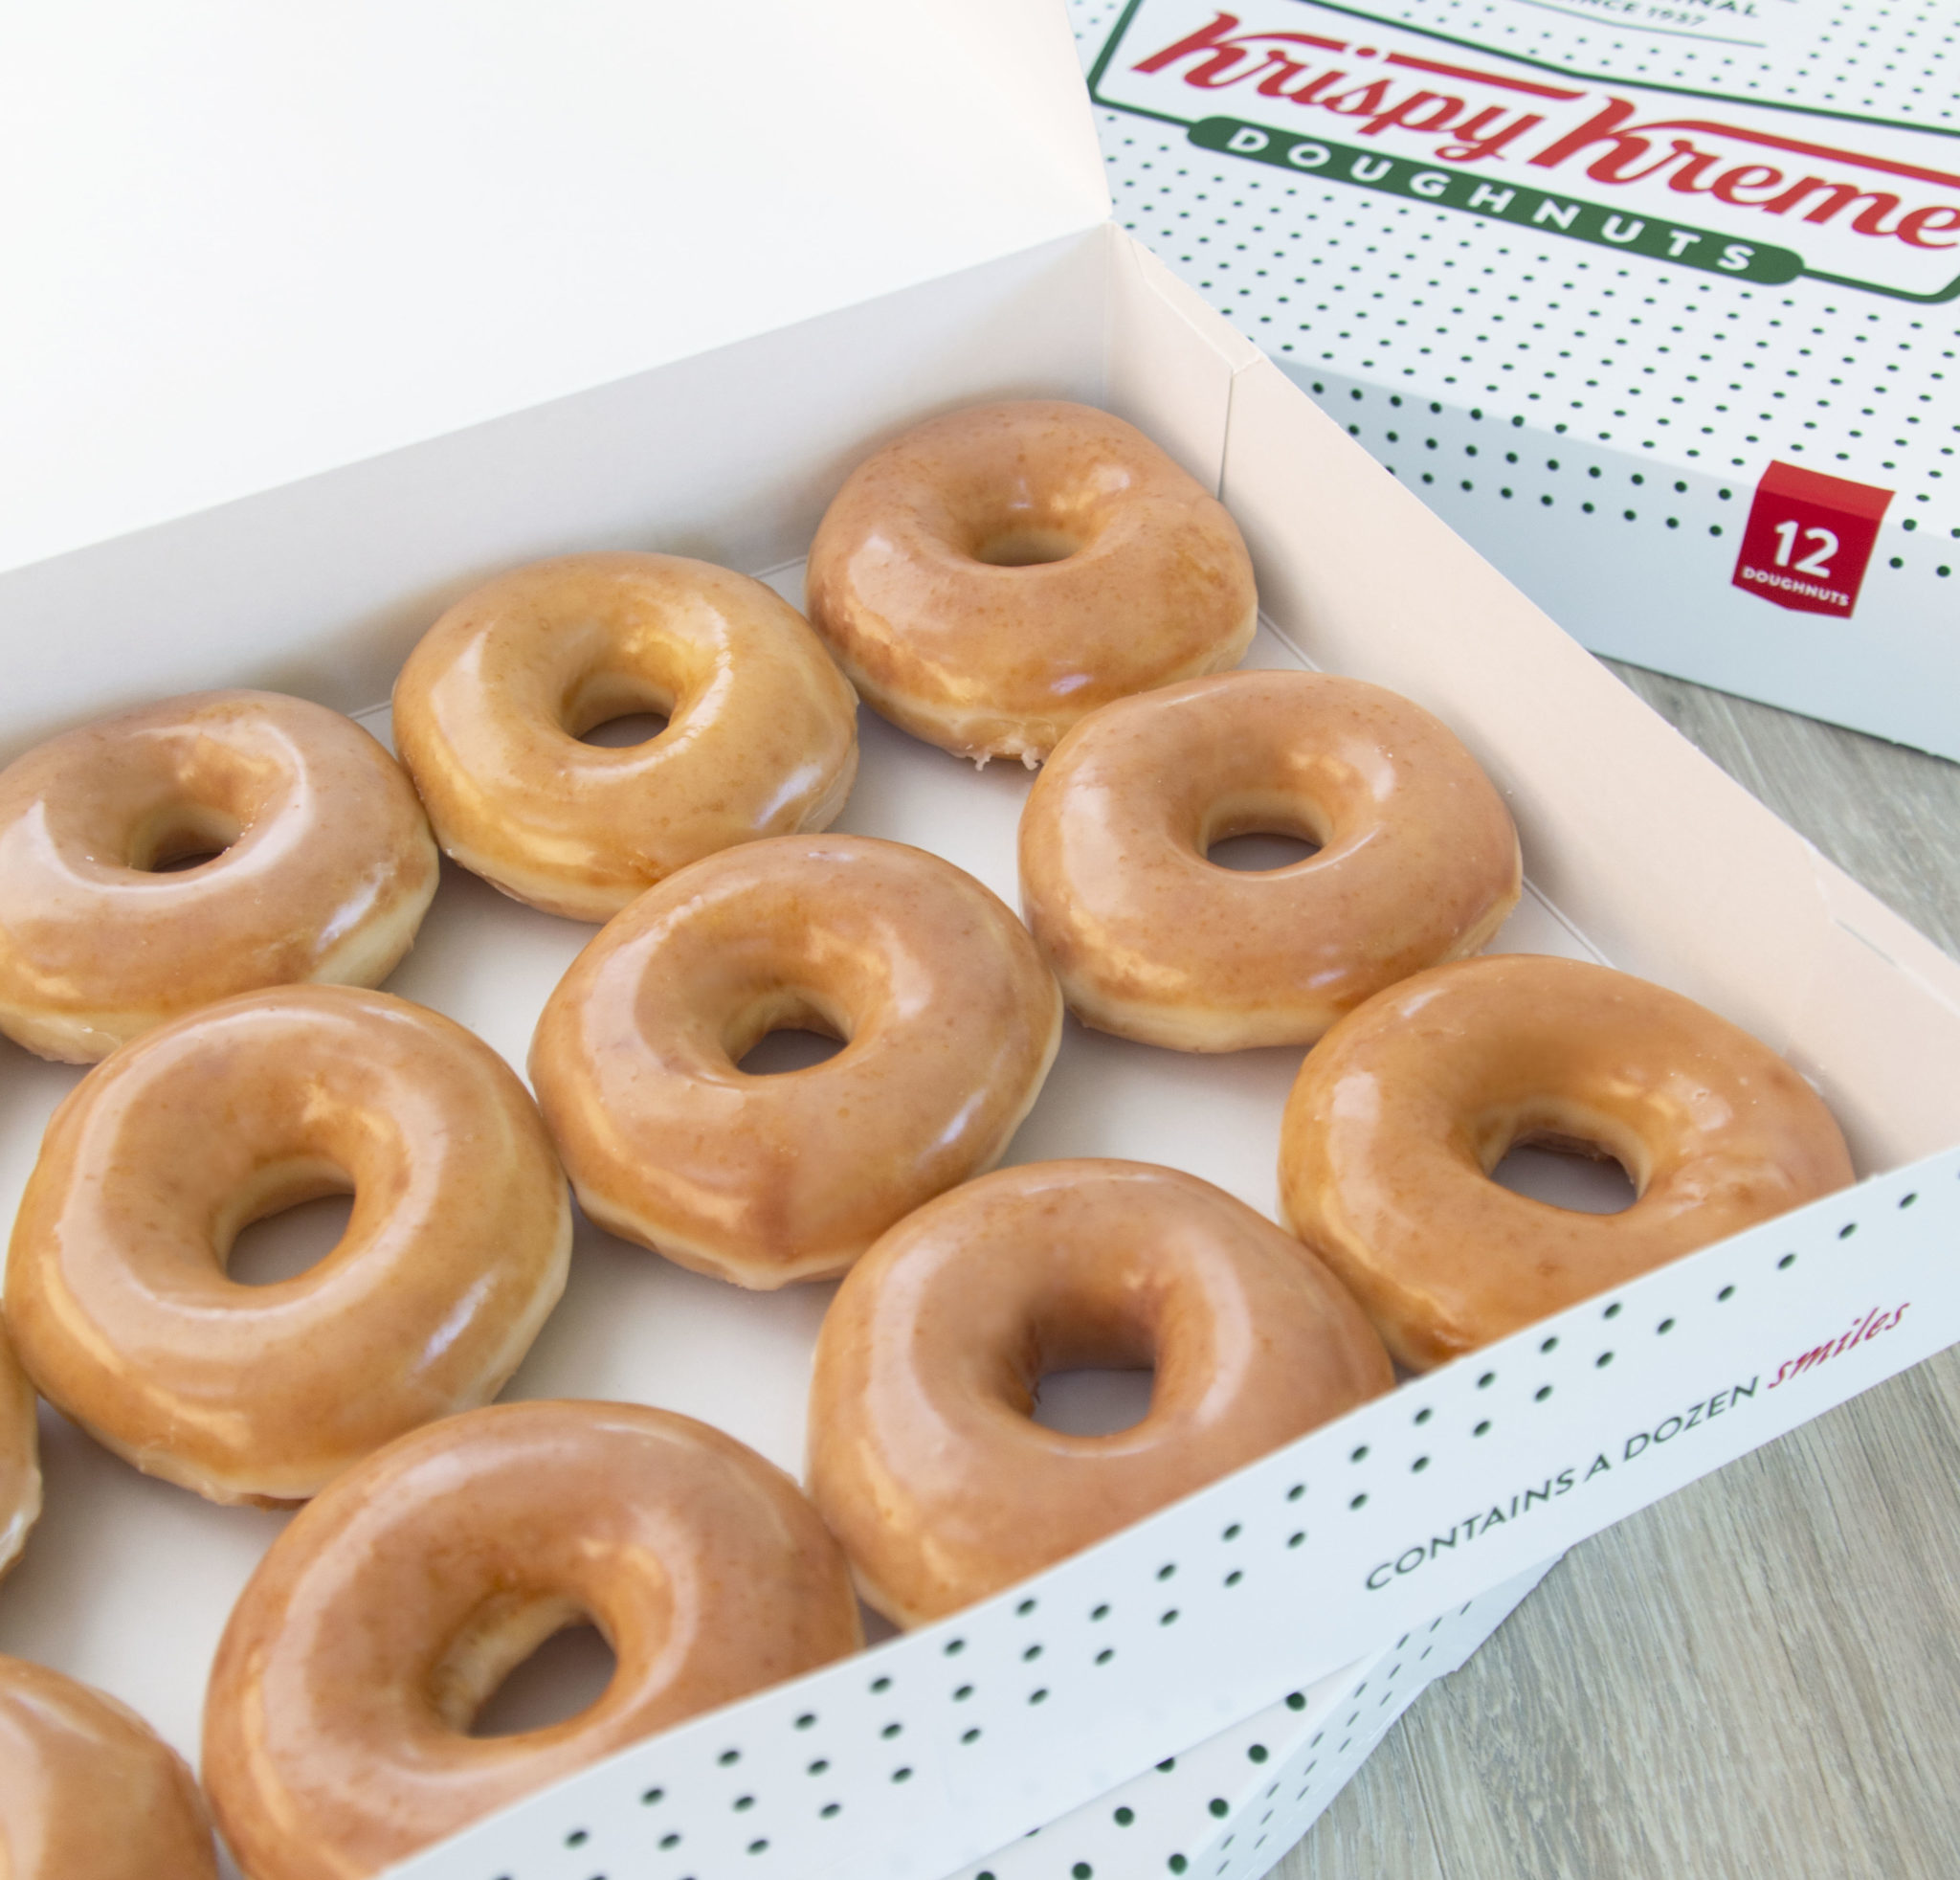 Krispy Kreme Digital עשרות ביקורות: שיתוף חוויות גיוס כספים